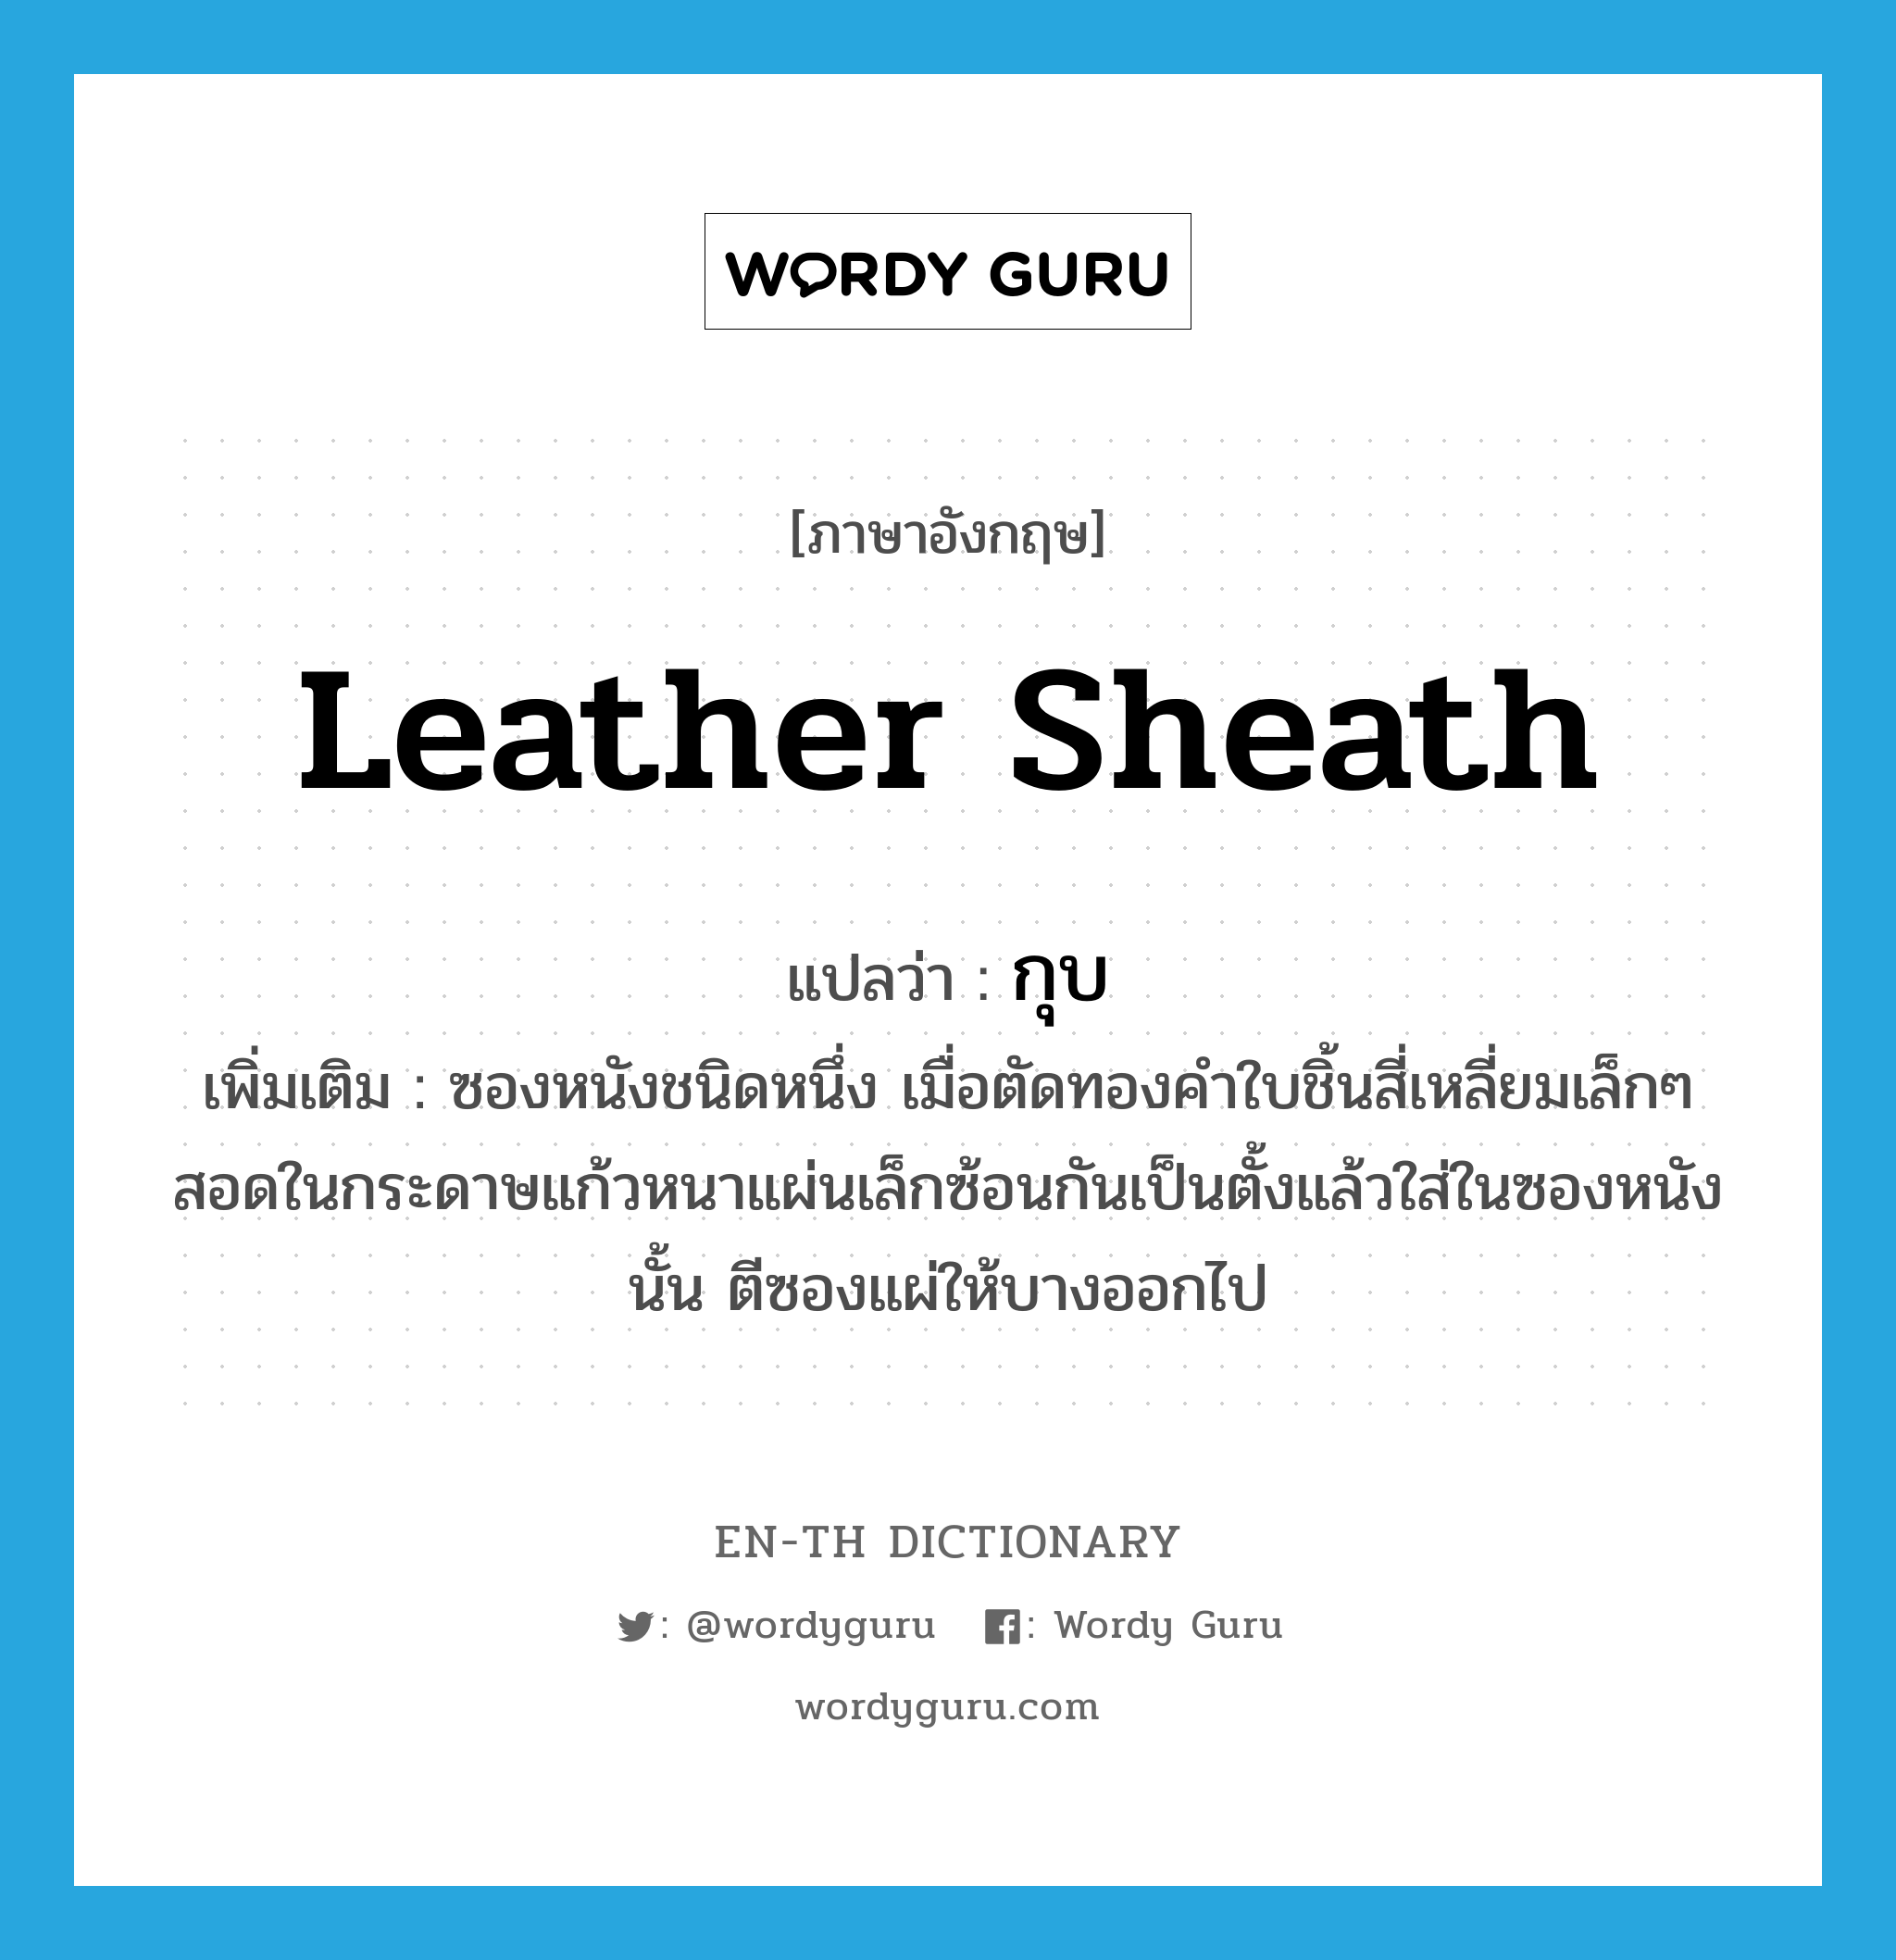 leather sheath แปลว่า?, คำศัพท์ภาษาอังกฤษ leather sheath แปลว่า กุบ ประเภท N เพิ่มเติม ซองหนังชนิดหนึ่ง เมื่อตัดทองคำใบชิ้นสี่เหลี่ยมเล็กๆ สอดในกระดาษแก้วหนาแผ่นเล็กซ้อนกันเป็นตั้งแล้วใส่ในซองหนังนั้น ตีซองแผ่ให้บางออกไป หมวด N